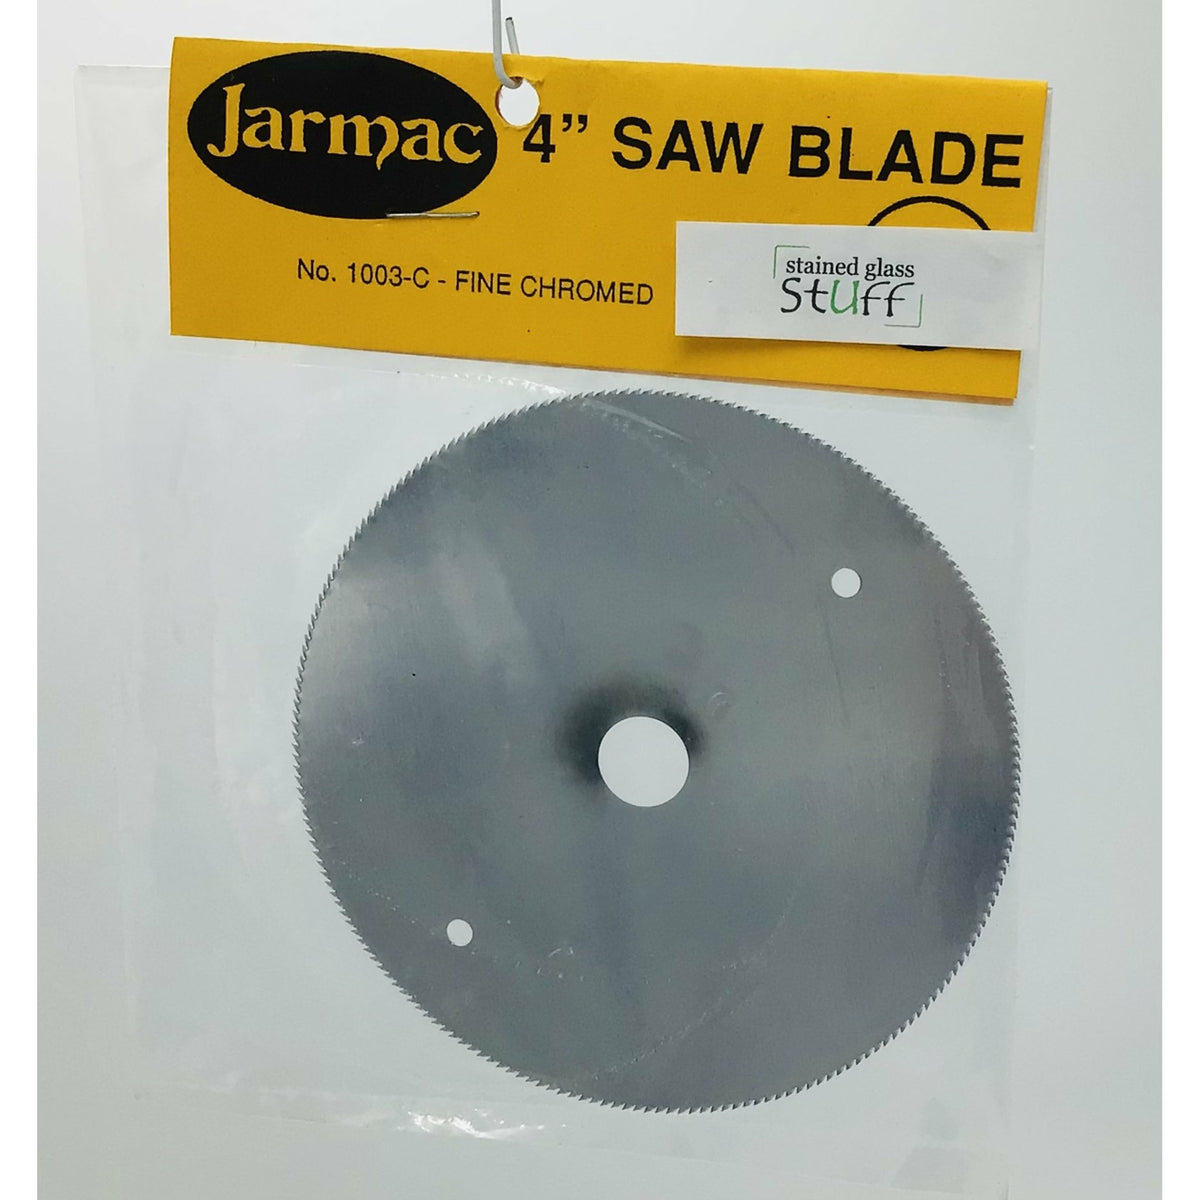 Jarmac 4” Saw Blade – Stained Glass Stuff